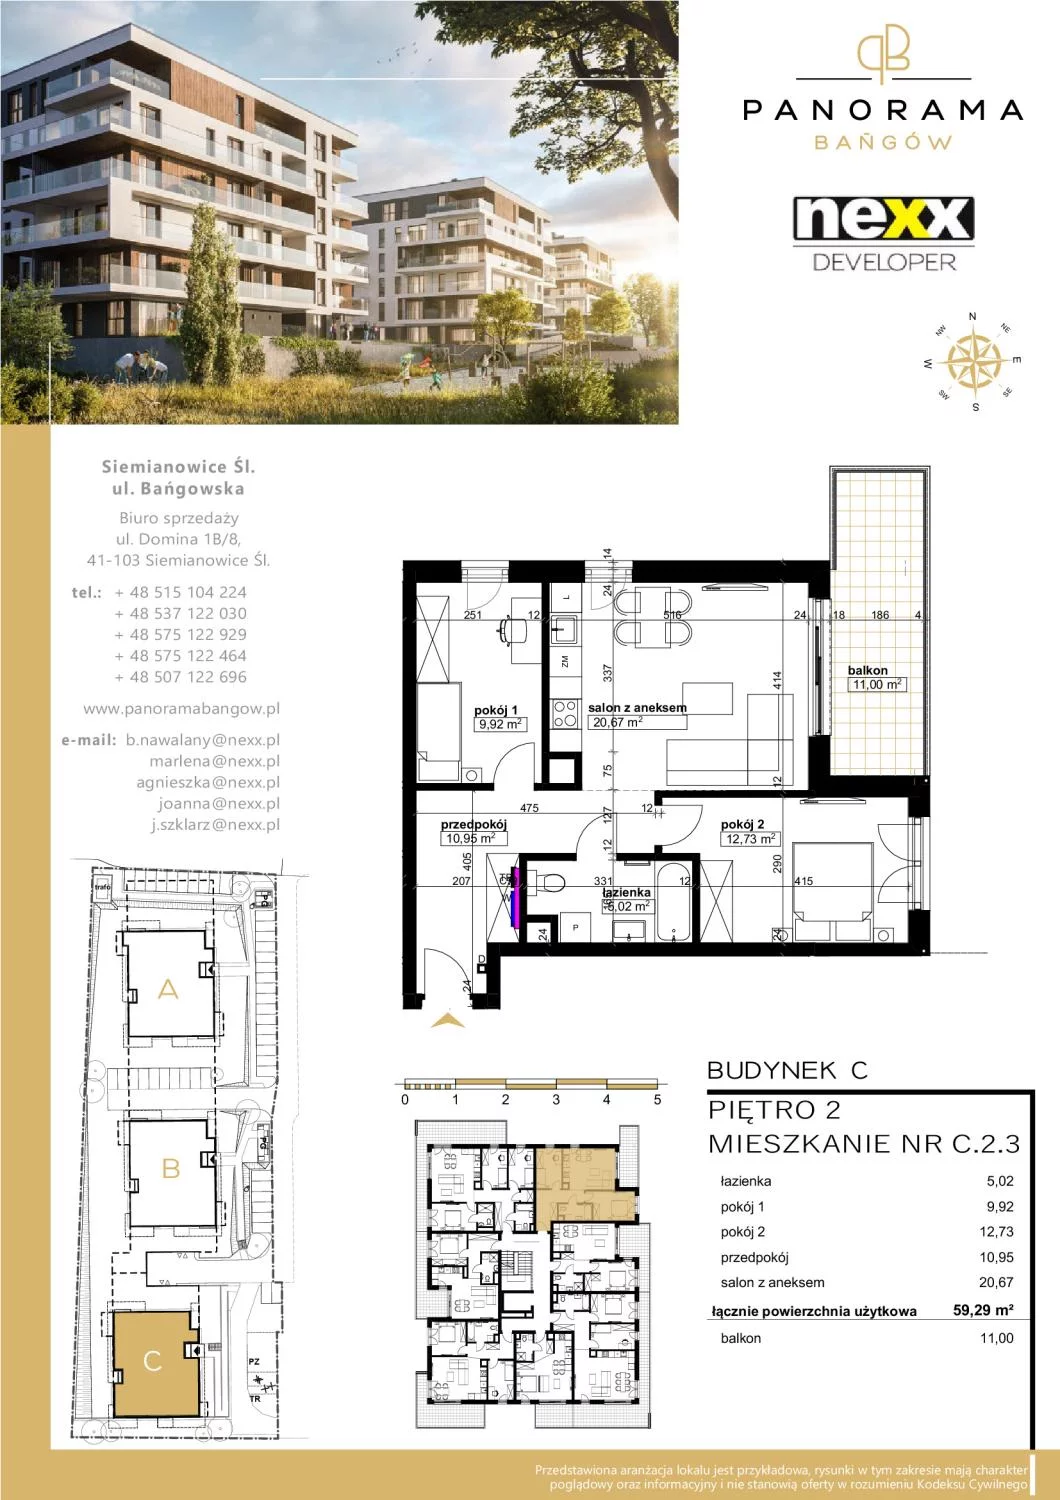 Mieszkanie 59,29 m², piętro 2, oferta nr C 2.3, Panorama Bańgów, Siemianowice Śląskie, Bańgów, ul. Bańgowska